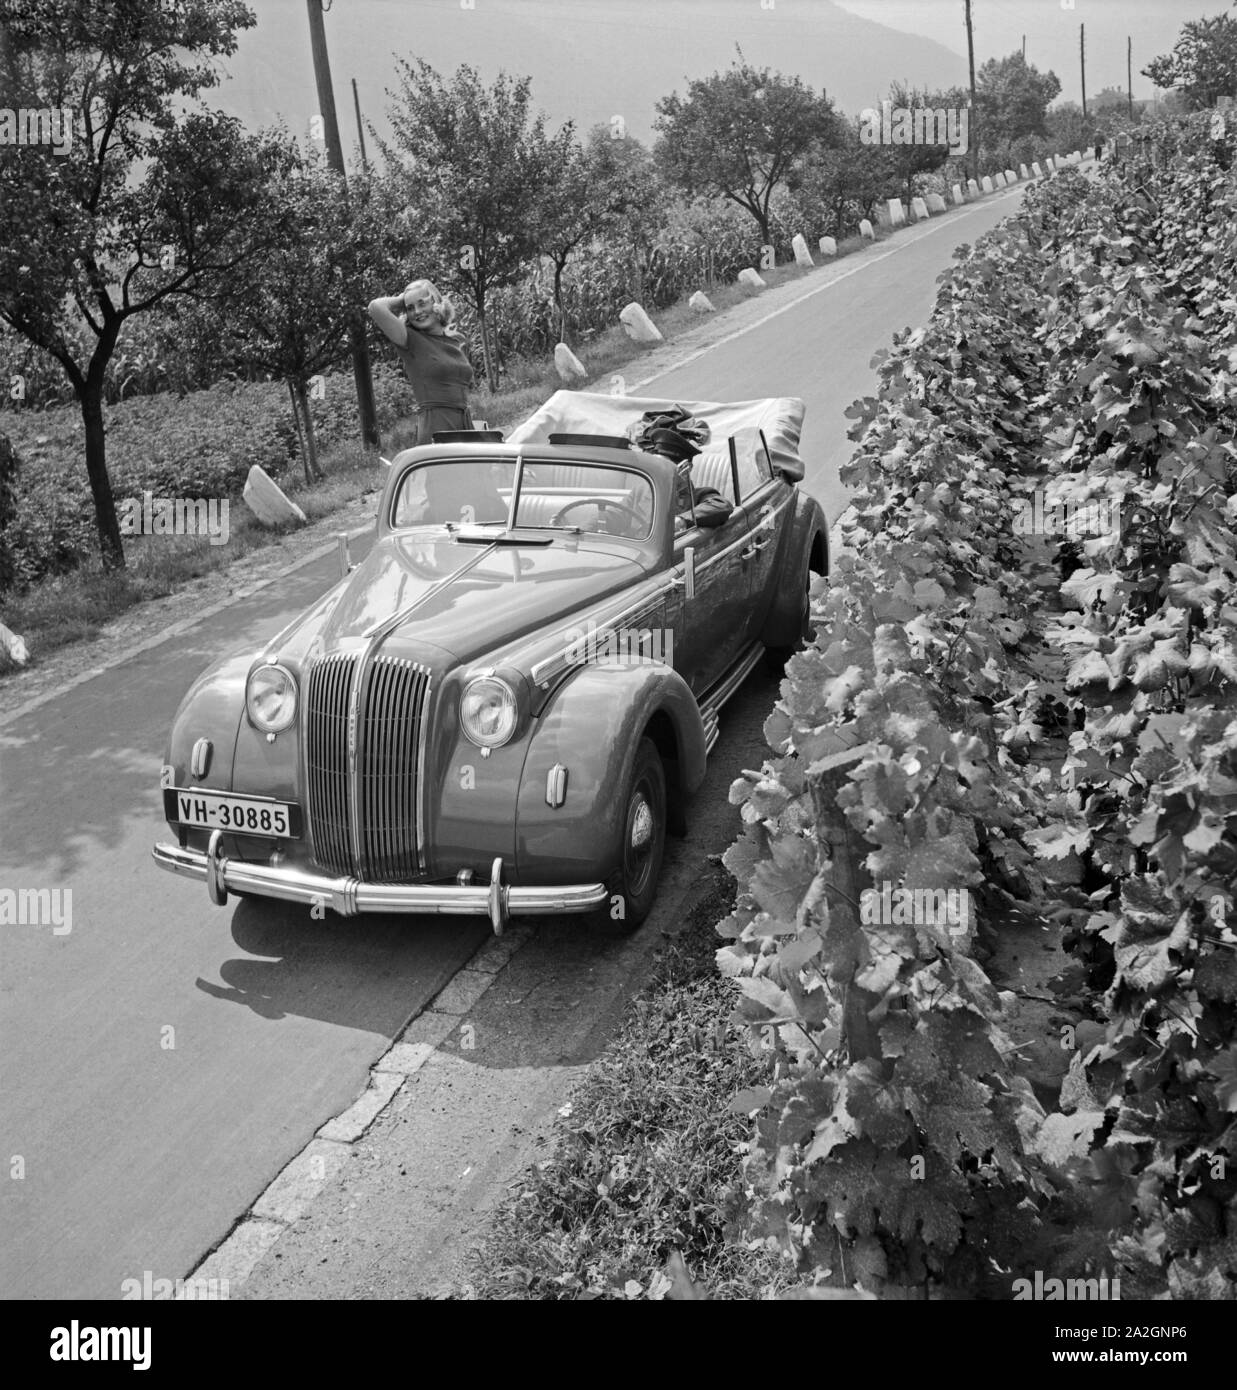 Eine junge Frau posiert vor einem Opel Olympia Cabrio auf einer Straße vor einem Weinberg, Österreich 1930er Jahre. A young woman posing in front of an Opel Olympia convertible on a street in front of a vineyard, Austria 1930s. Stock Photo